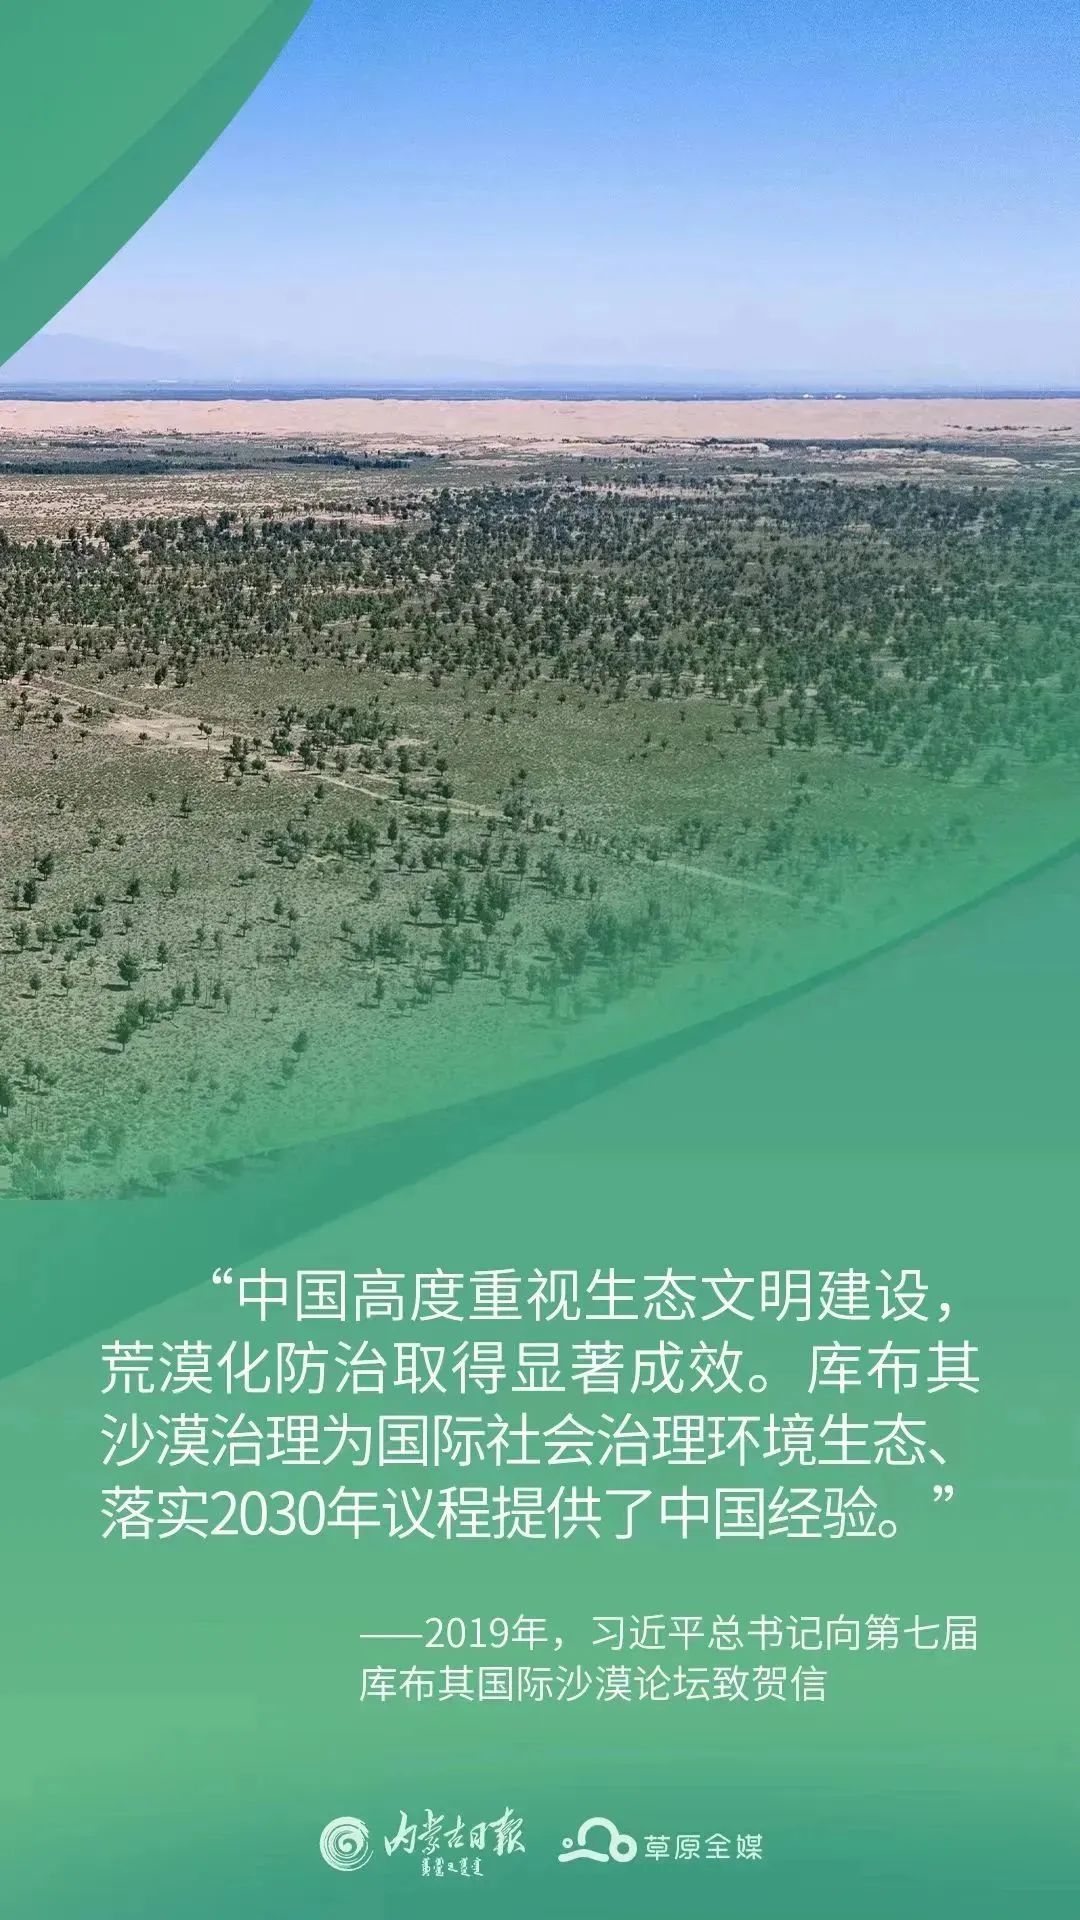 库布其沙漠的世界样本——内蒙古努力创造防沙治沙新奇迹系列报道之三